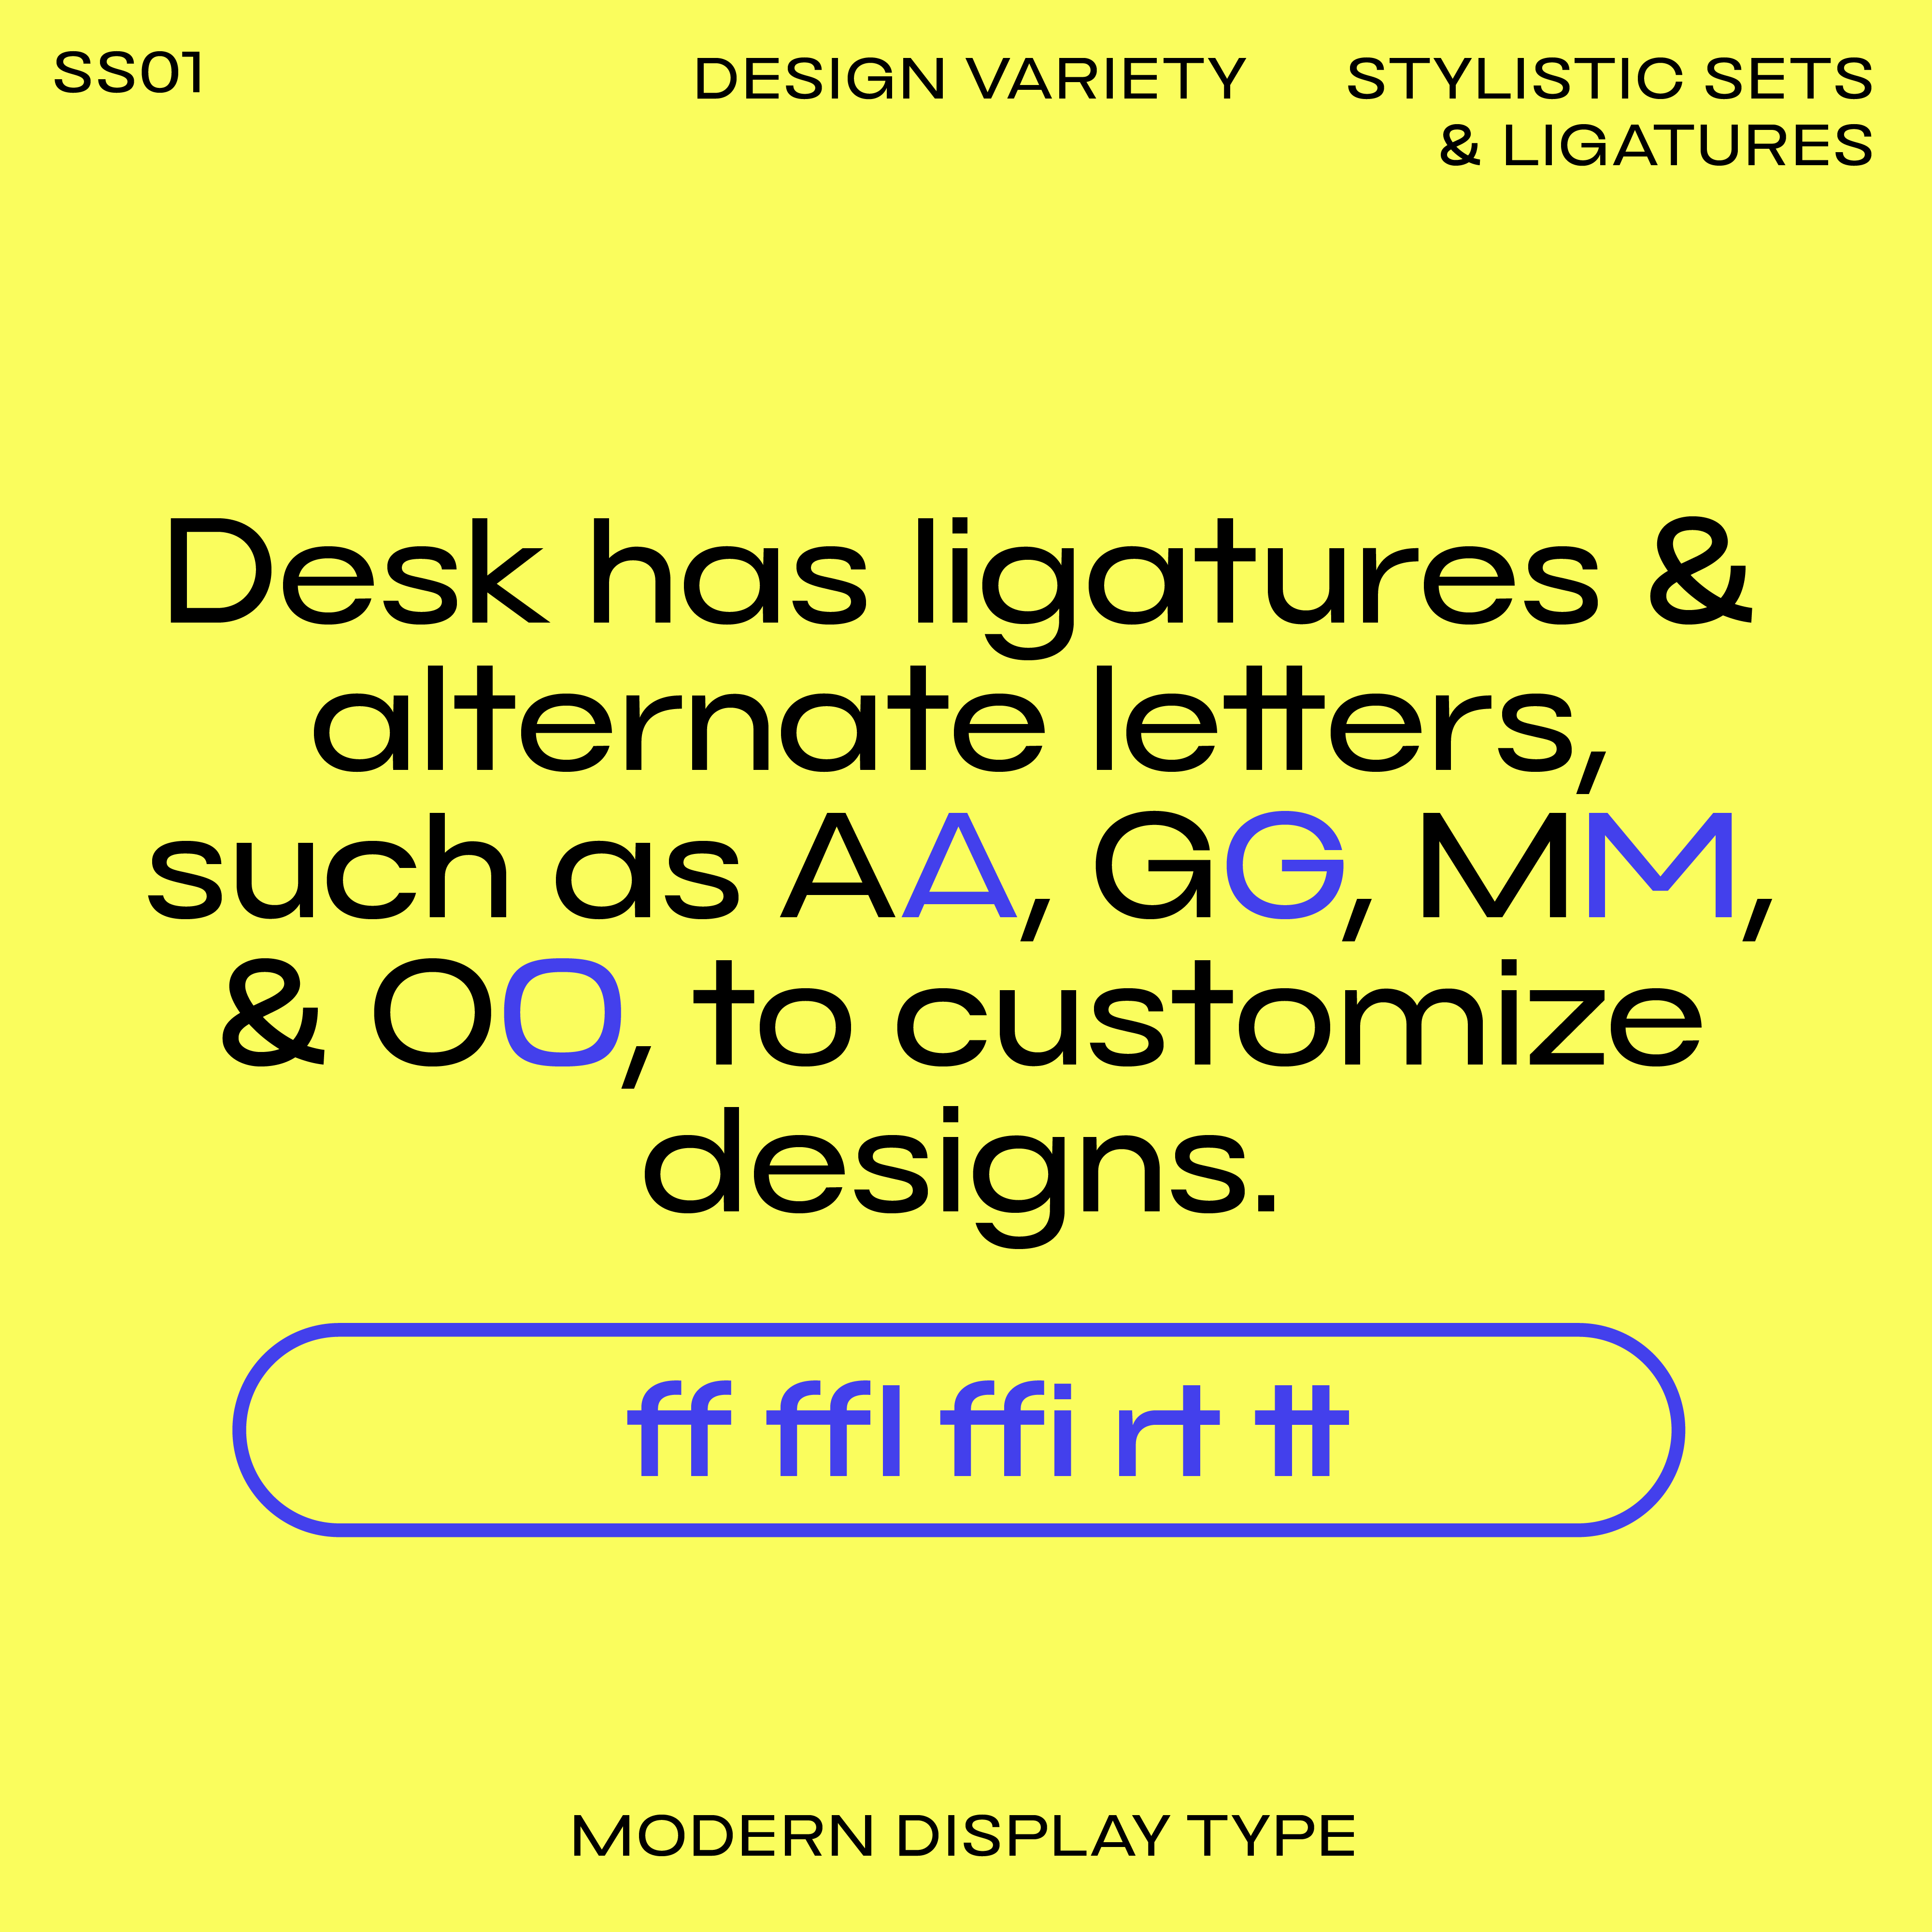 Bauhaus Desk, font for modern display with ligatures